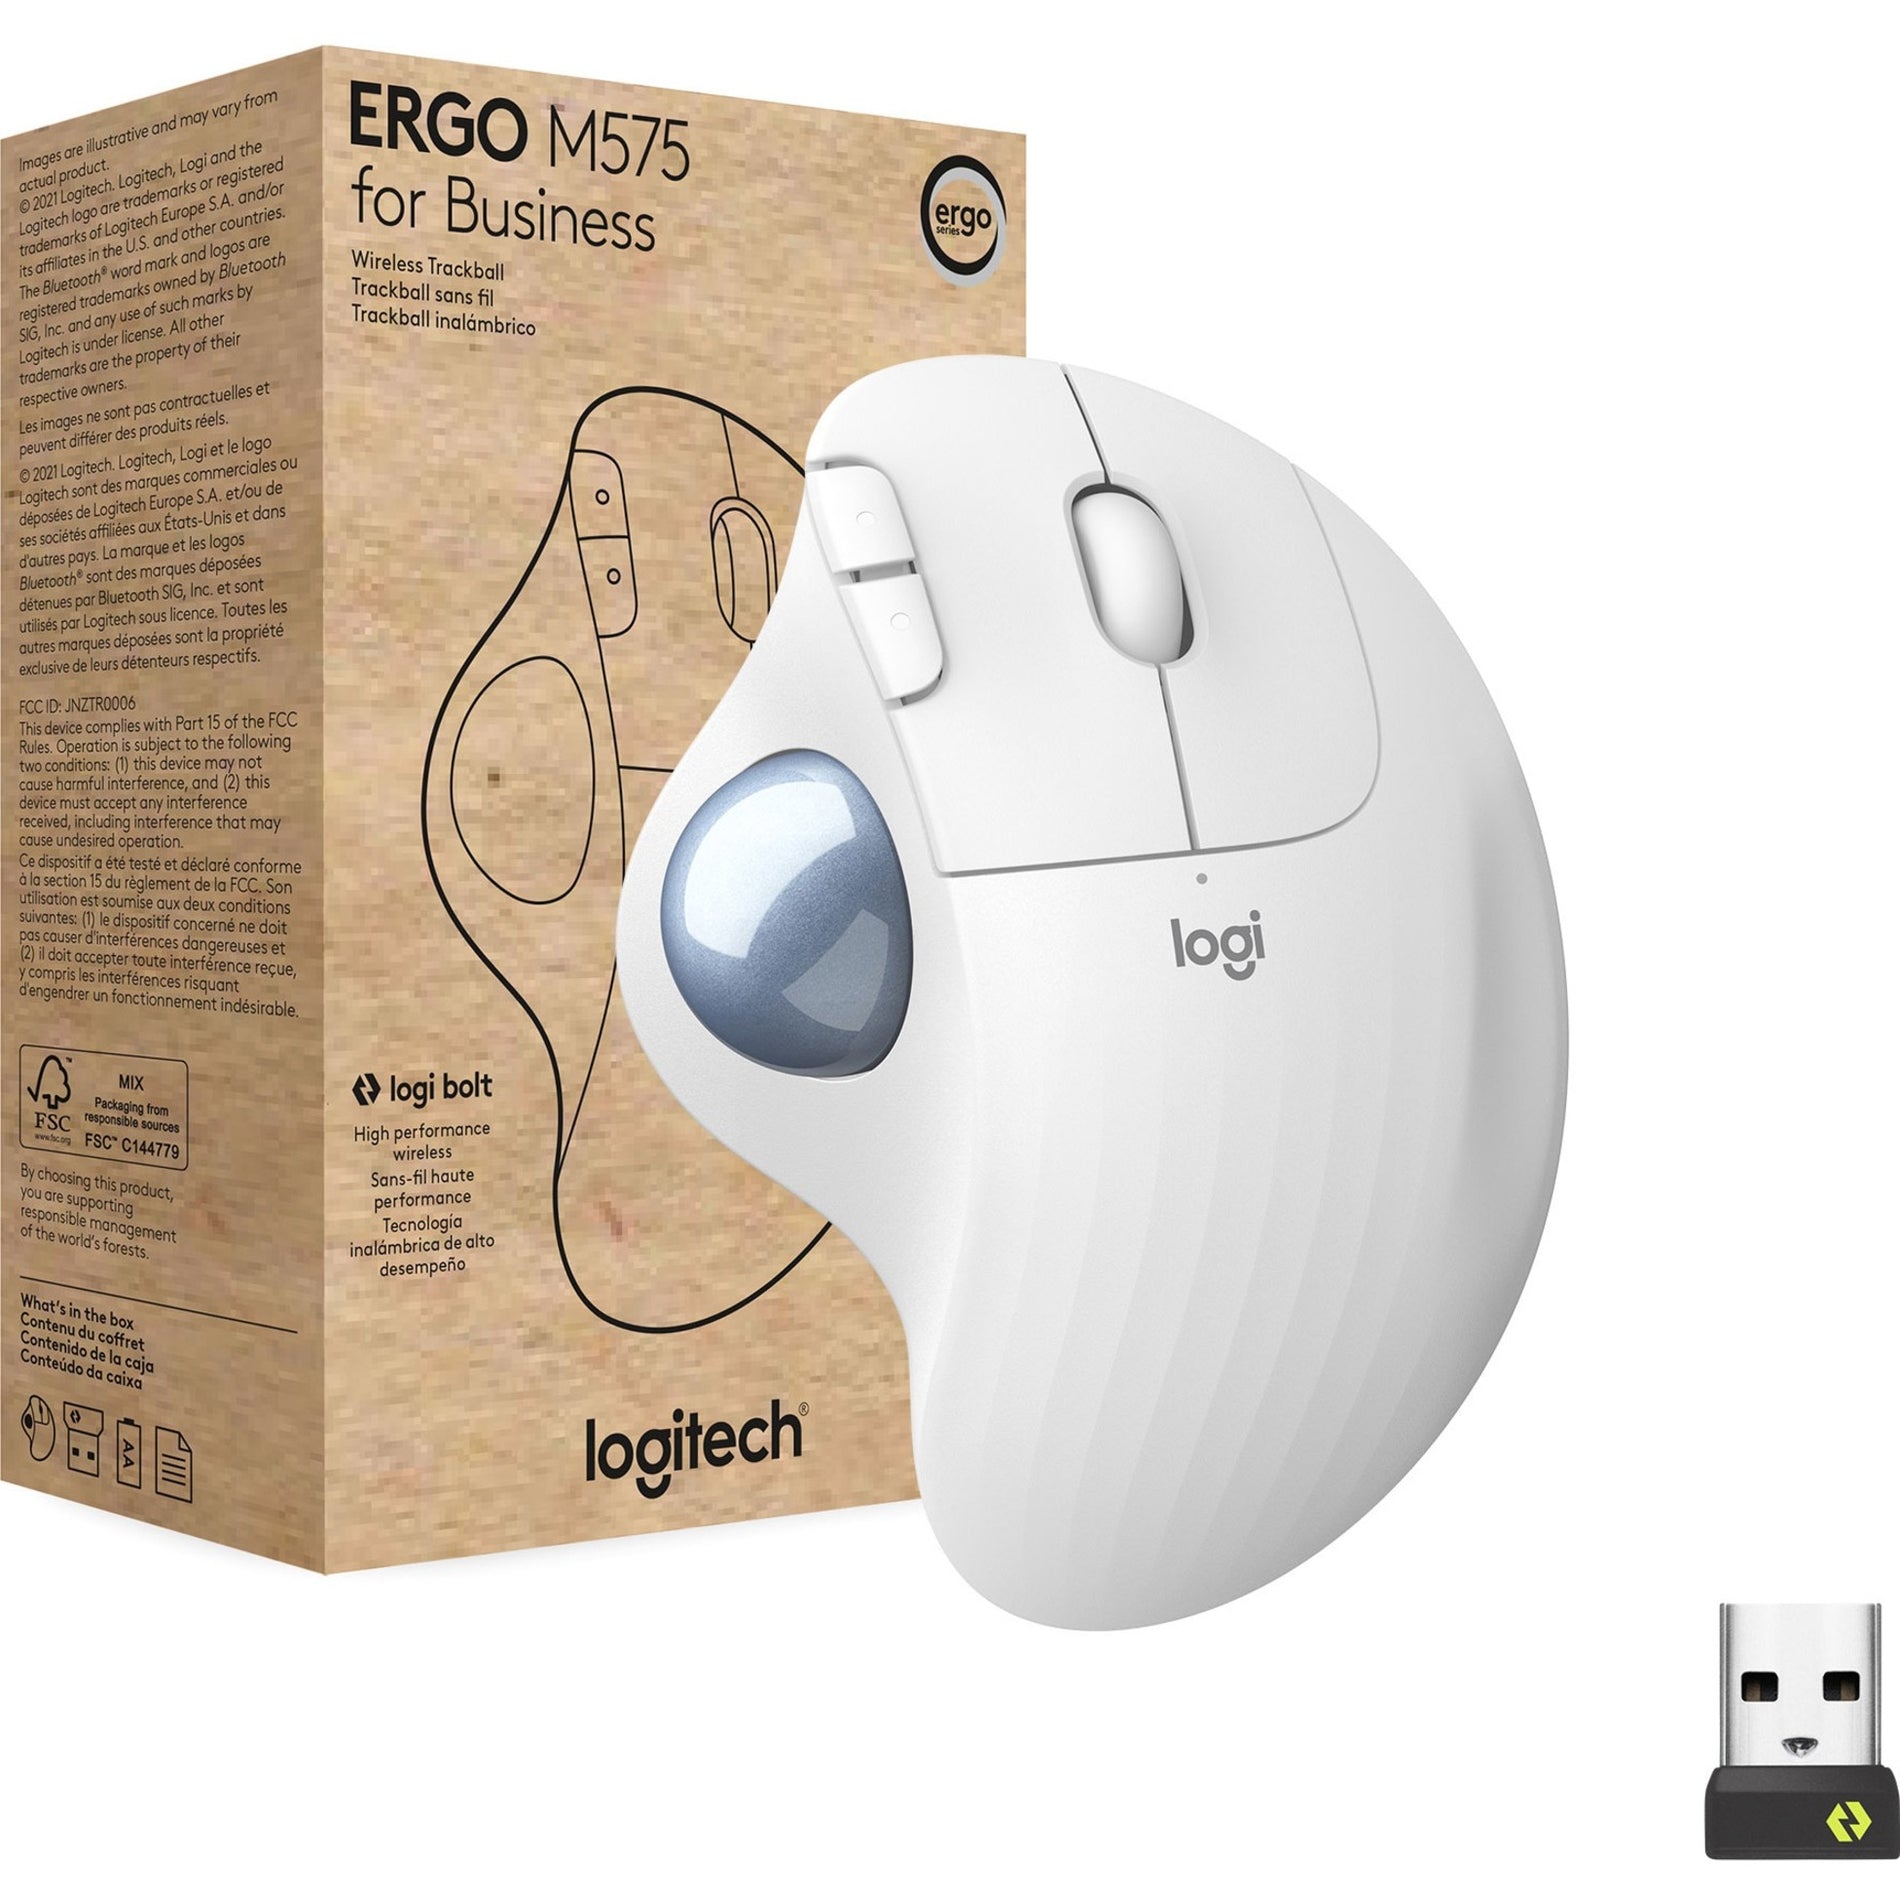 Logitech 910-006437 ERGO M575 Wireless Trackball For Business, Off White